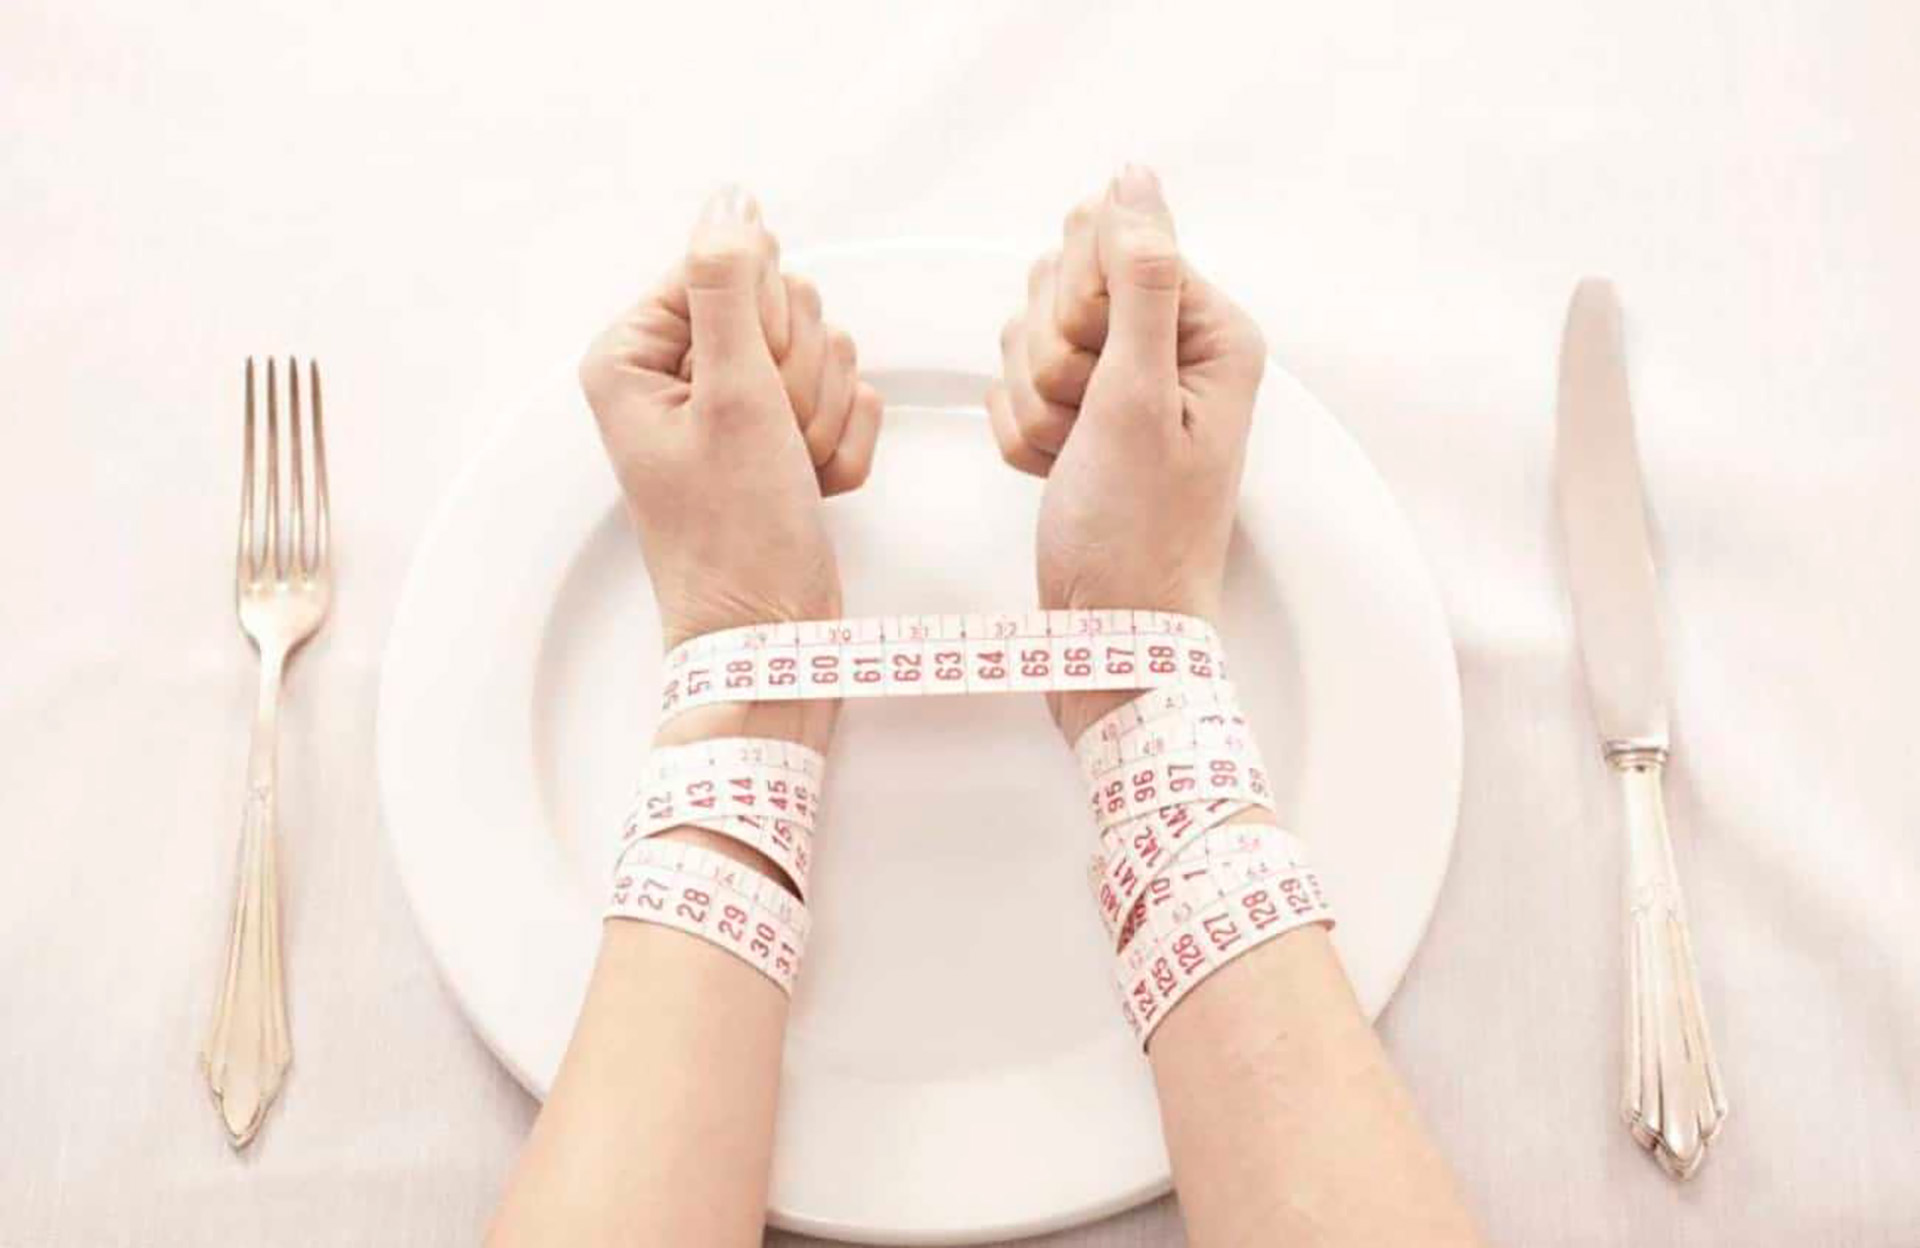 Los factores comunes son la preocupación excesiva por el peso y la figura, la distorsión de la imagen corporal, y las prácticas reiteradas de control del peso, a través de dietas, ejercicio físico exagerado y desórdenes en rutinas alimentarias, entre otros